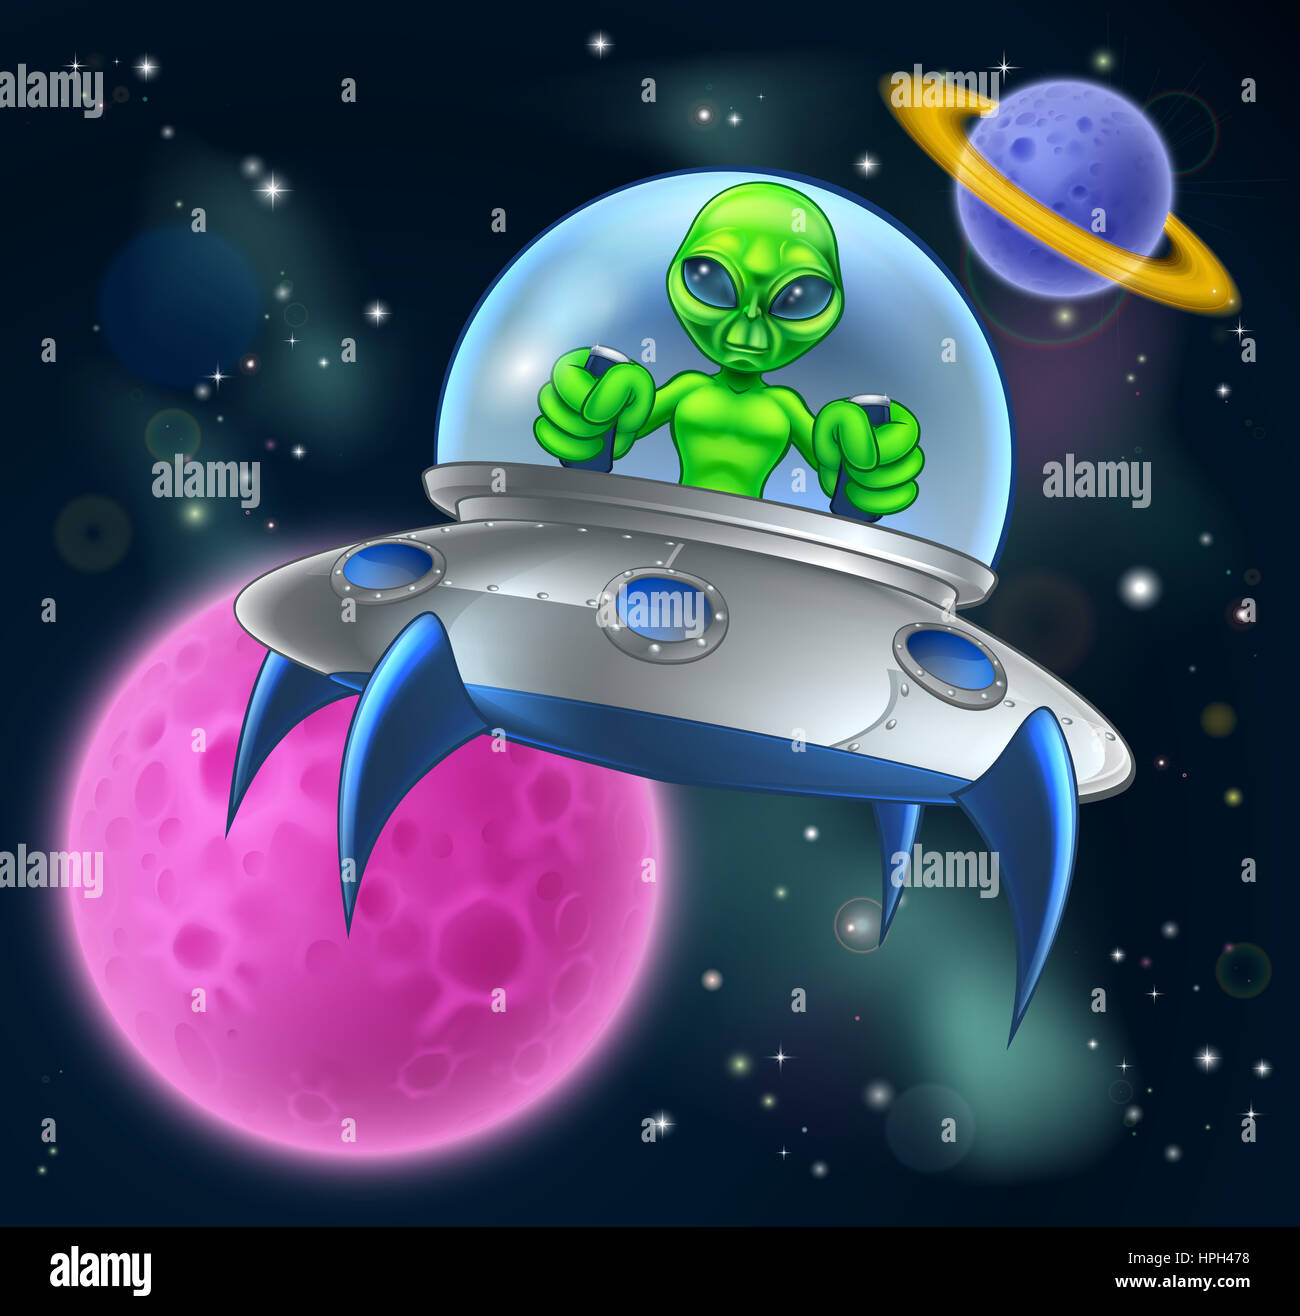 Cartoon-außerirdisches Raumschiff oder fliegende Untertasse in Raum Szene mit einem Monden und Planeten im Hintergrund Stockfoto